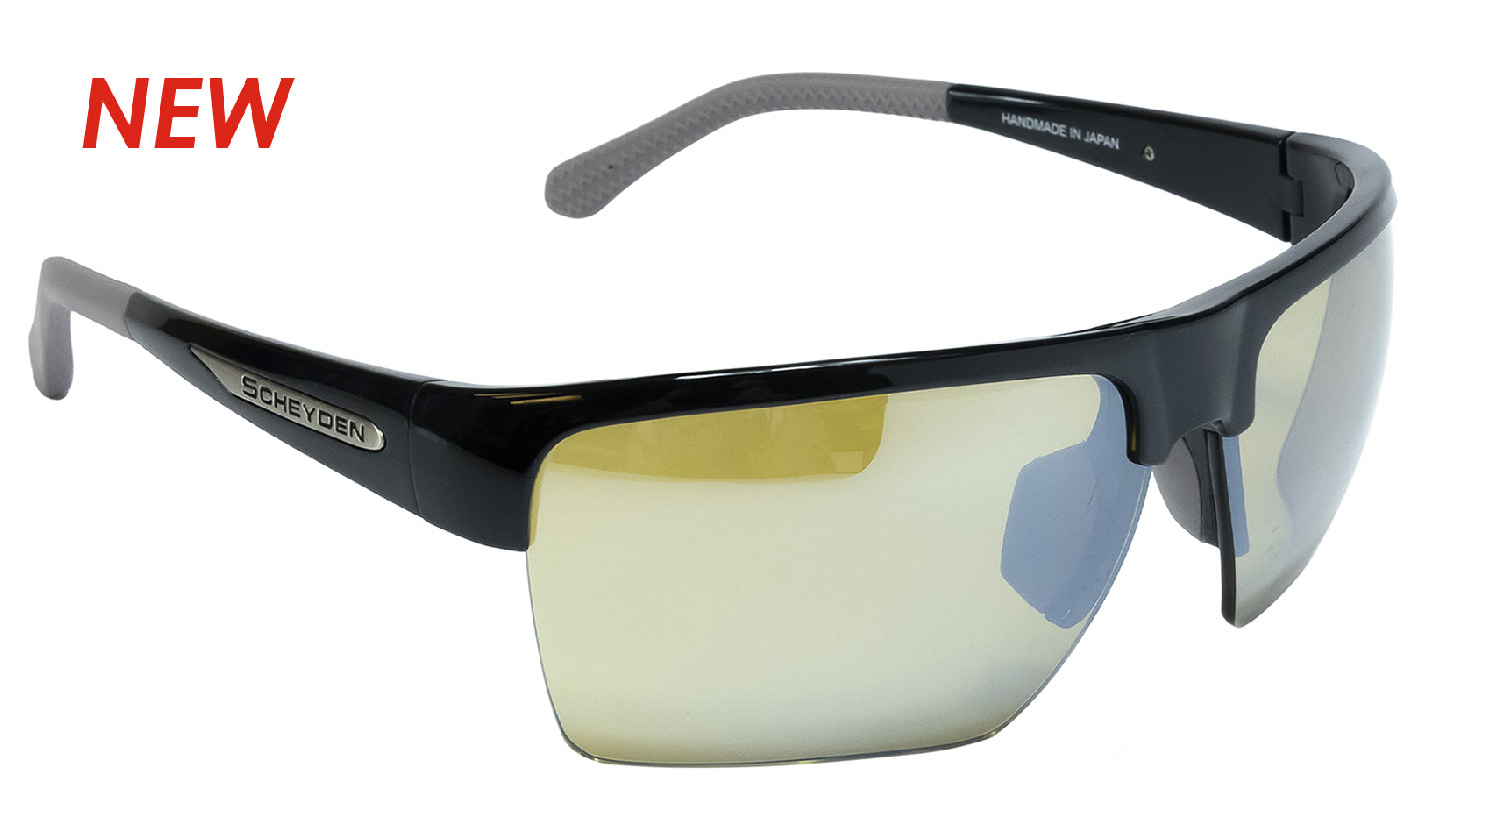 Scheyden Golf Sunglasses - CIA Grabber